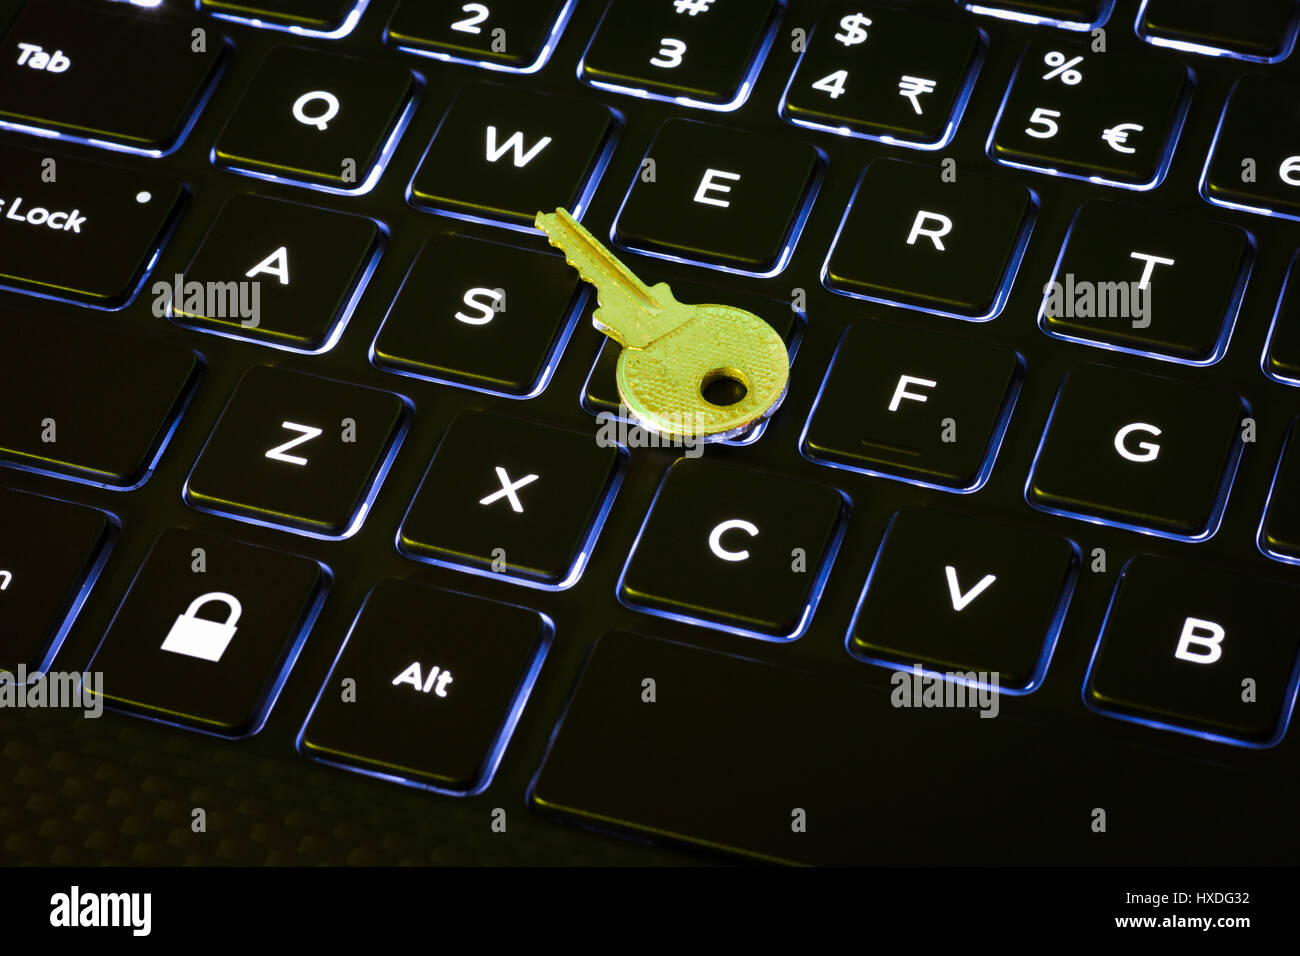 La llave y el botón de bloqueo en un teclado de ordenador retroiluminado Foto de stock